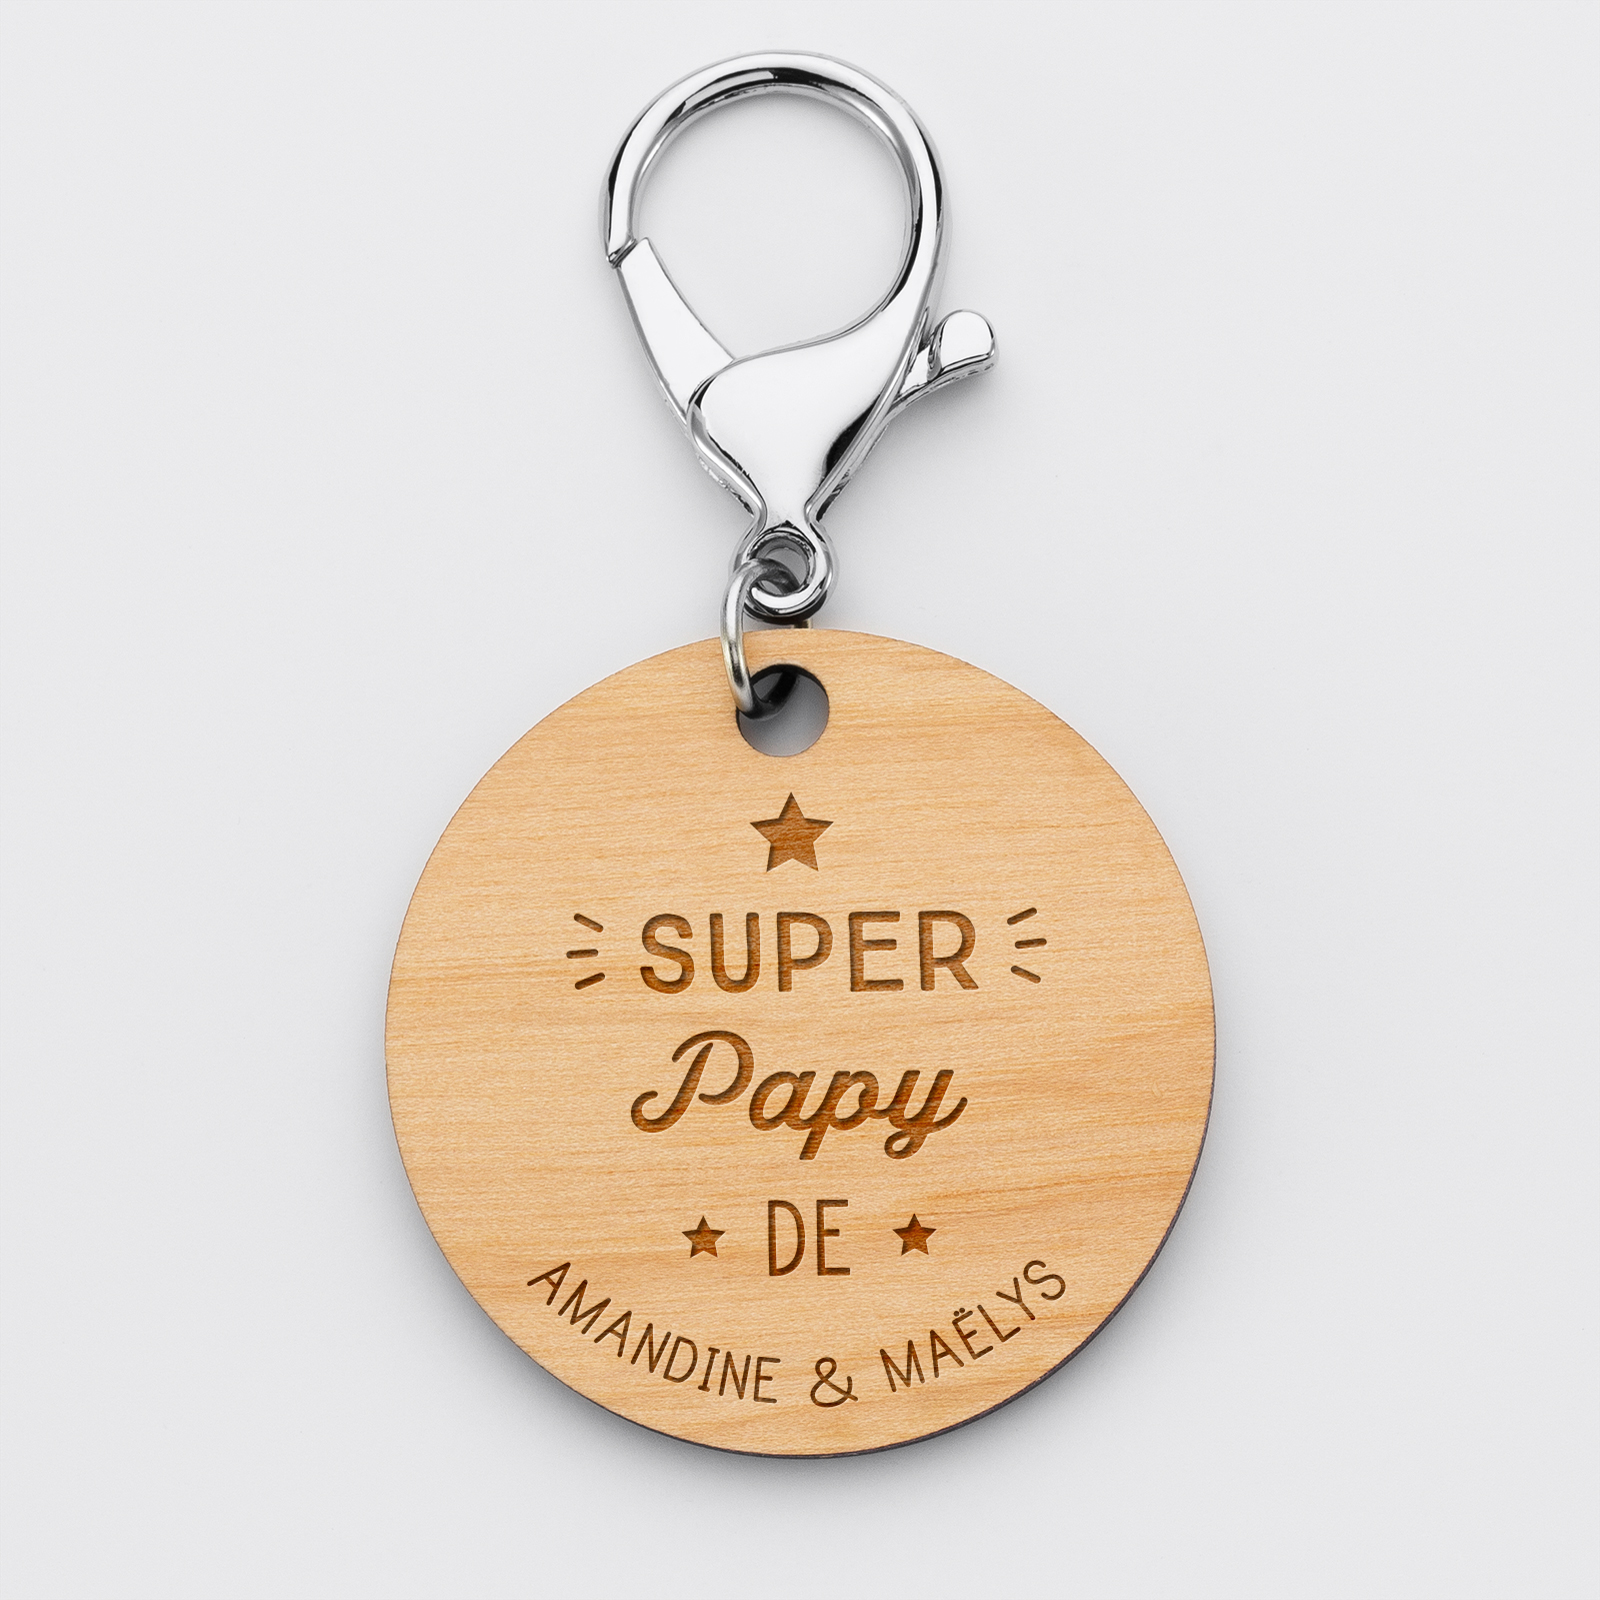 Personalised engraved wooden "Super Granddad" round names medallion keyring 50mm - 1